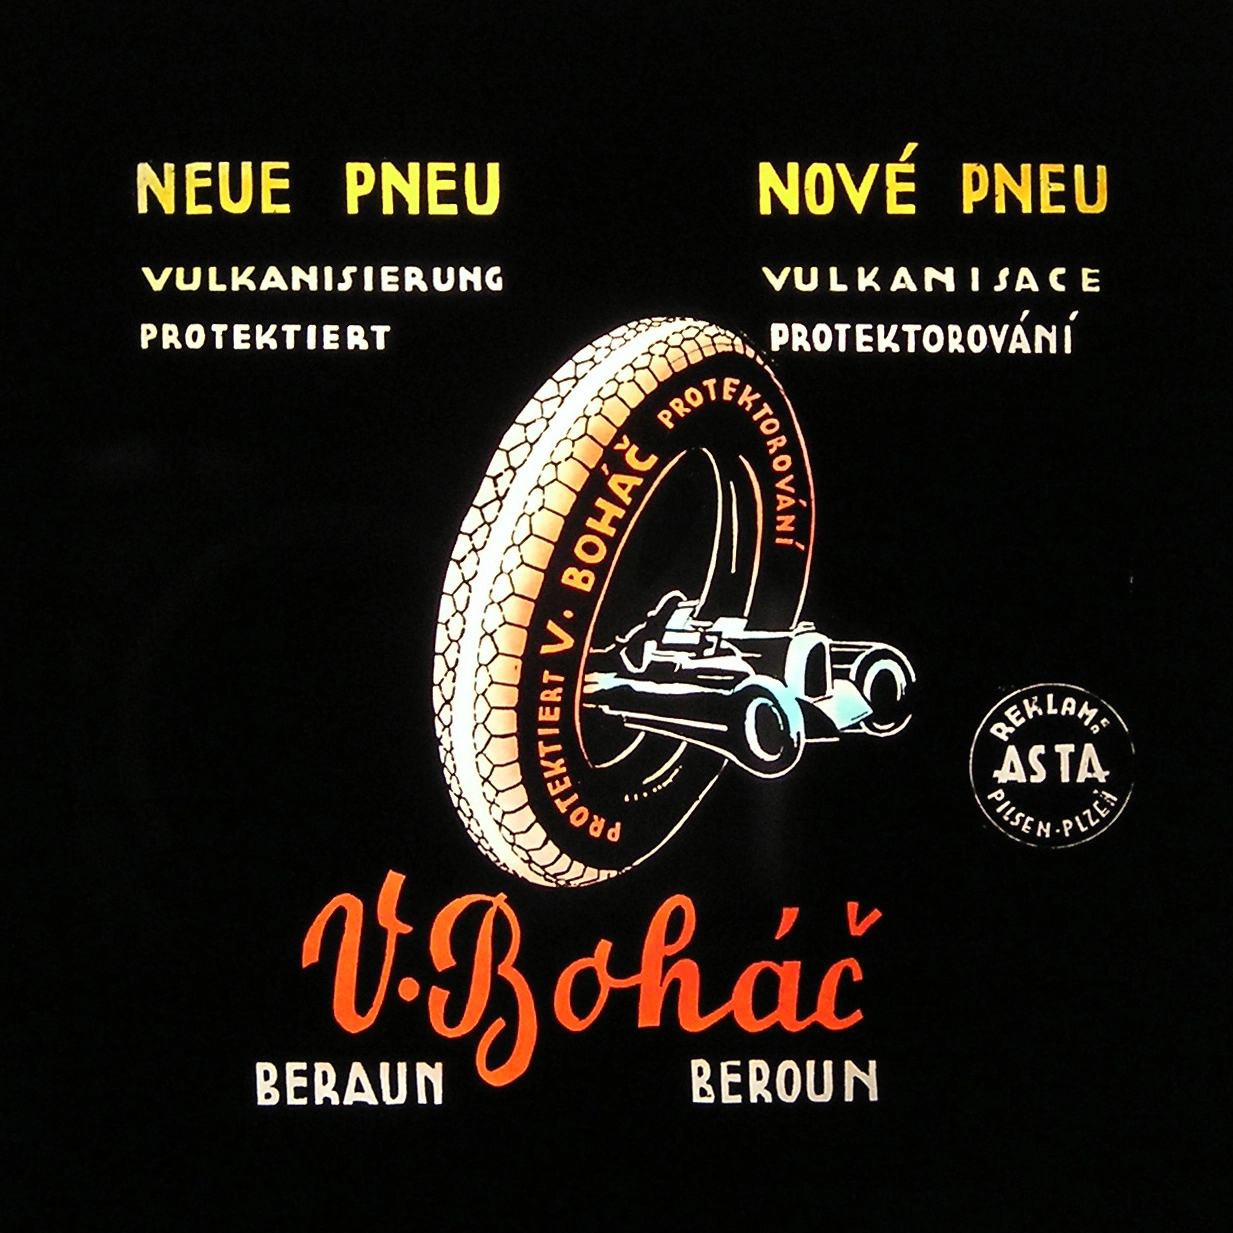 Původní logo pneucentra Boháč z roku 1938